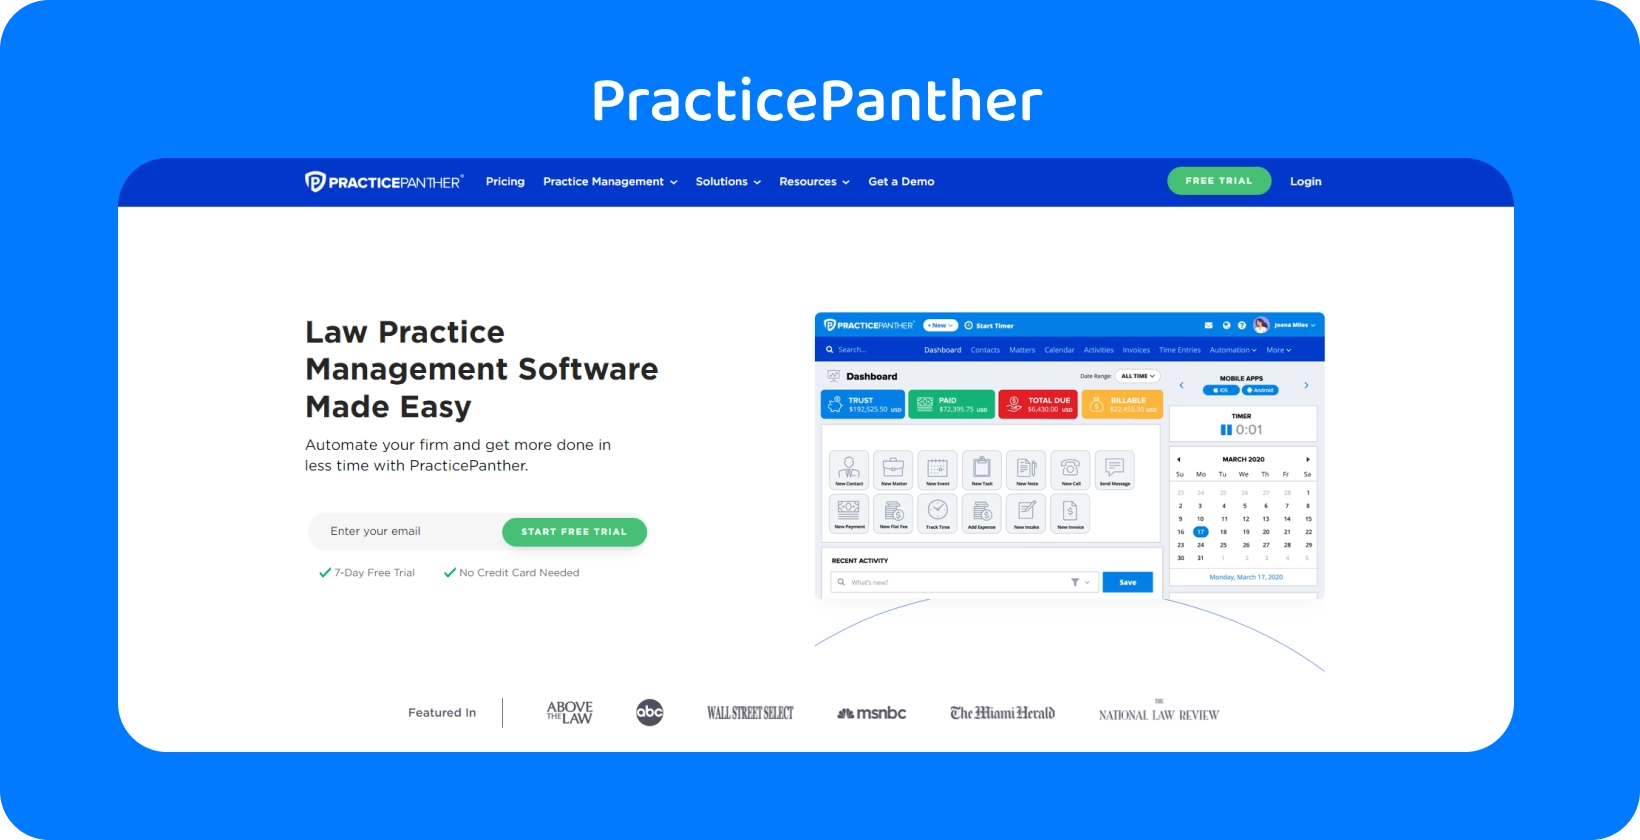 Інформаційна панель PracticePanther, що демонструє інструменти для управління юридичною практикою.